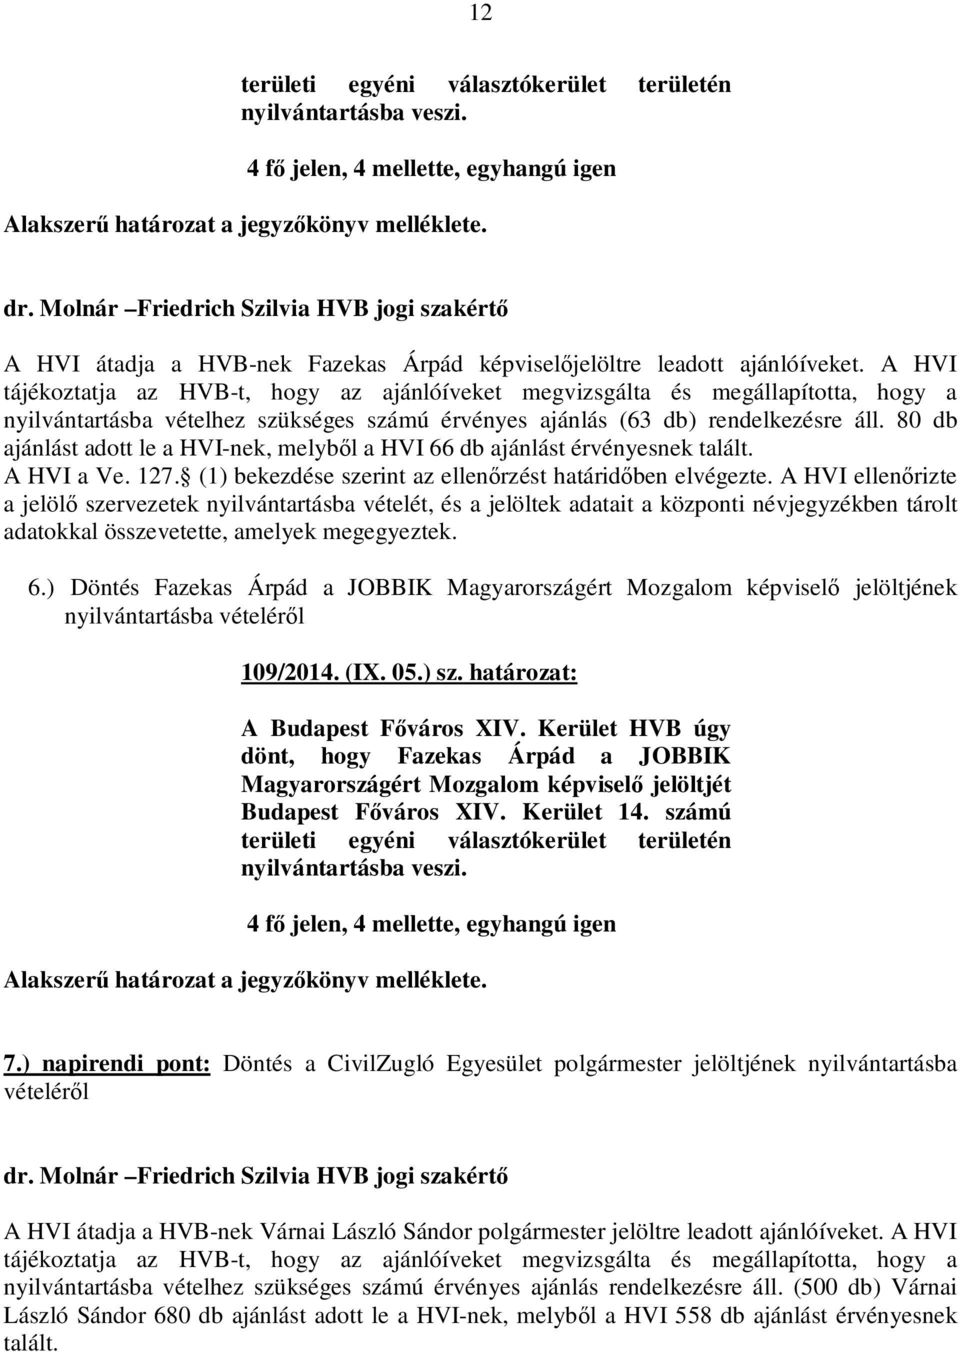 80 db ajánlást adott le a HVI-nek, melyből a HVI 66 db ajánlást érvényesnek talált. 6.) Döntés Fazekas Árpád a JOBBIK Magyarországért Mozgalom képviselő jelöltjének 109/2014. (IX. 05.) sz.